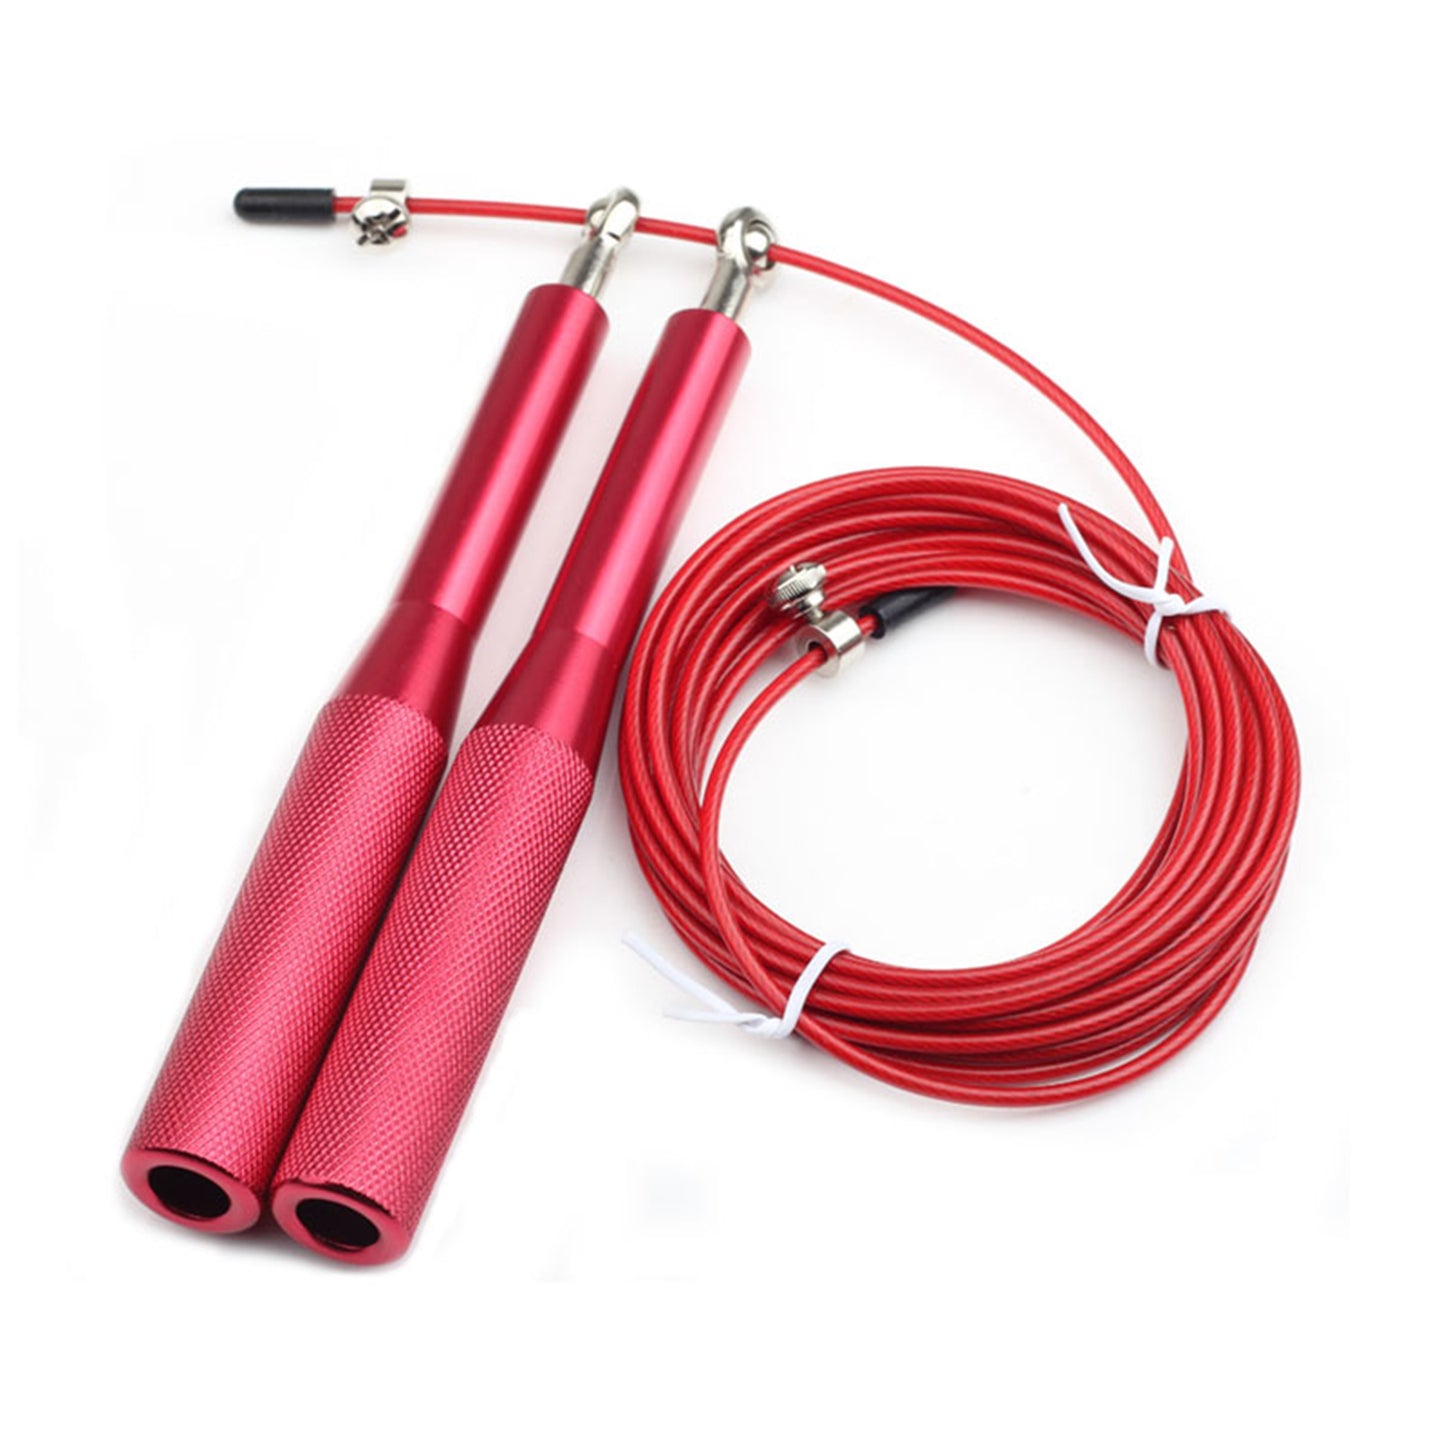 حبل نط من المعدن - طول قابل للتعديل بمقبض مائل - للكارديو و اللياقة البدنية - لون احمر - Kanteen - كانتين